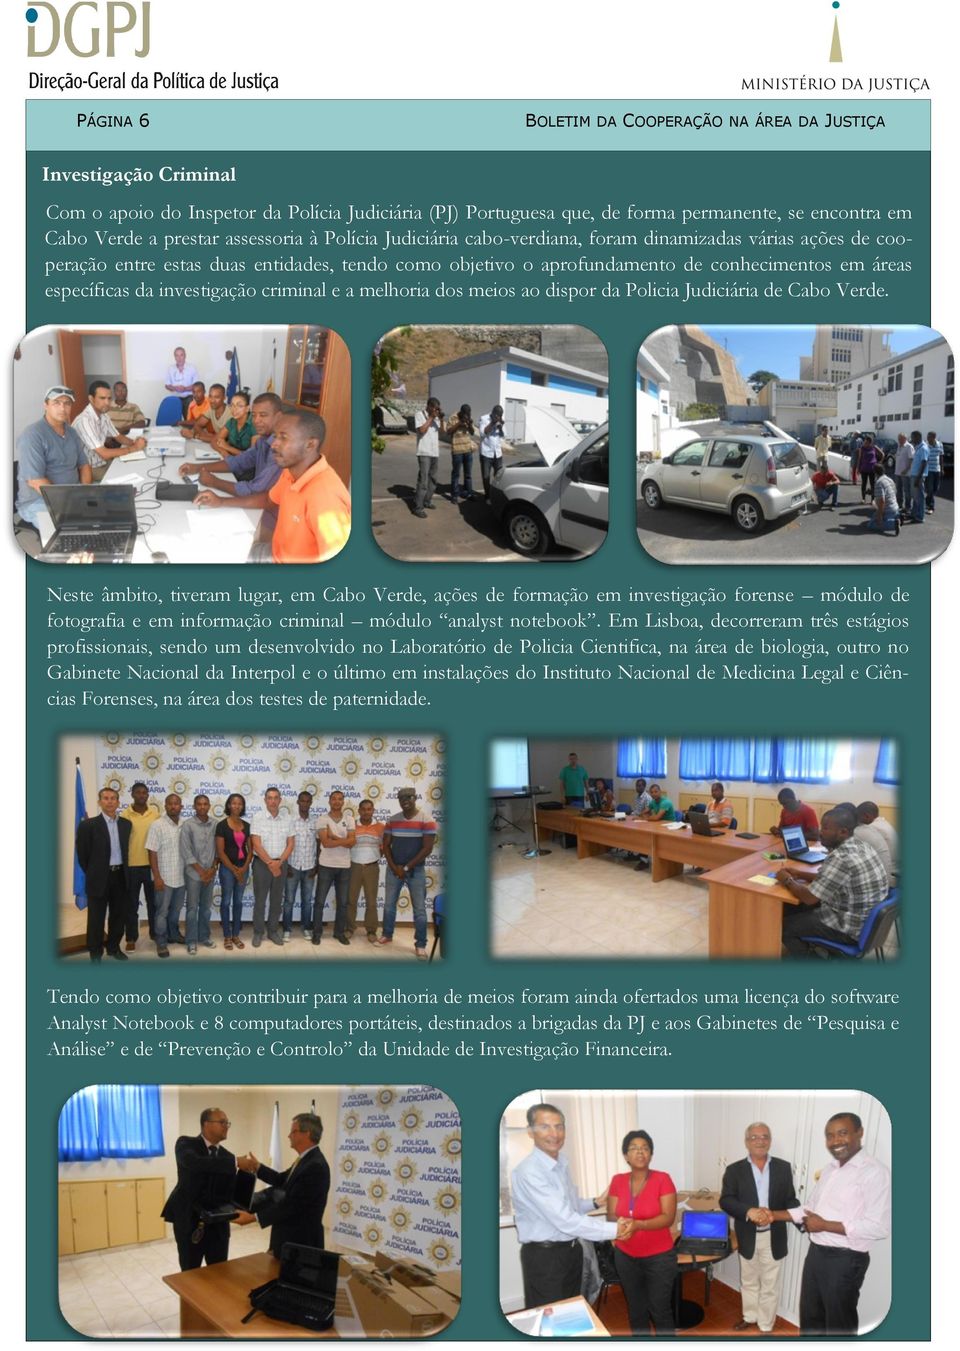 investigação criminal e a melhoria dos meios ao dispor da Policia Judiciária de Cabo Verde.